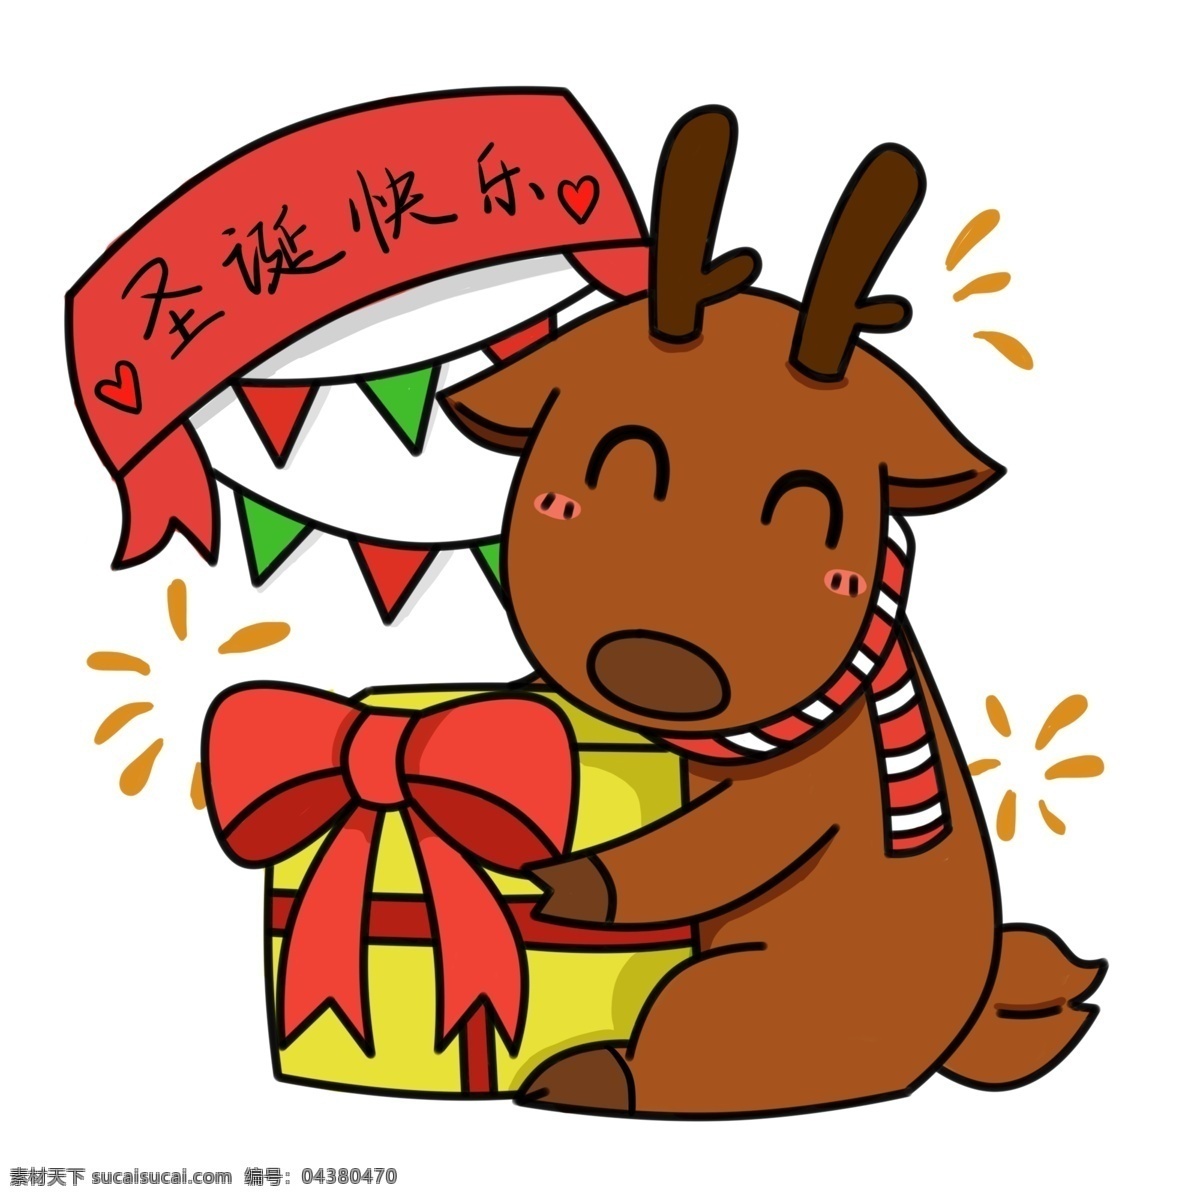 可爱 卡通 清新 圣诞节 麋鹿 商用 元素